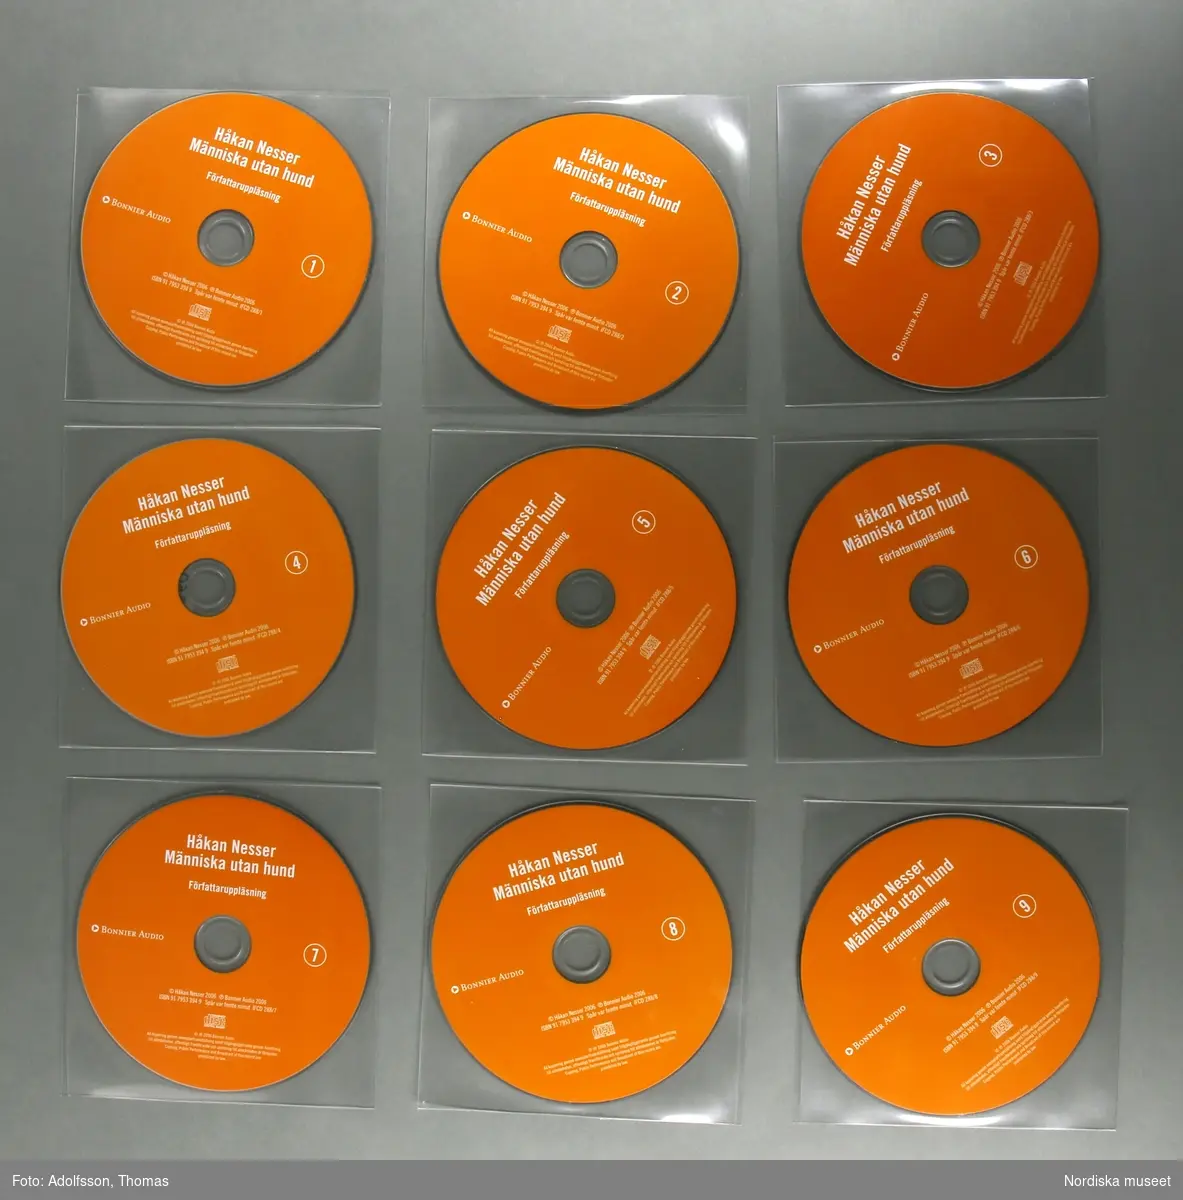 CD-bok.  a:1-2-n:1-2) 14 st CD-skivor, i en kvadratisk, transparent plastficka, innehållandes uppläsning av romanen "Människa utan hund" skriven av författaren Håkan Nesser som även är uppläsaren på denna CD-inspelning.  Inspelningen är totalt 15 timmar lång.

CD-skivorna är tunna cirkelfornade,  12 cm i diameter, på ena sidan oranga med text om titel samt kort om produktionen. Varje skiva är numrerad för att visa rangordningen i vilken skivorna ska lyssnas på/spelas. Baksidan på skivan är silverfärgad, speglliknande, och innehåller själva ljudspåren som läses av när skivan placeras i en CD-spelare.
Varje skiva är separat plackad i en kvadratisk, transparent, plastficka för att skydda mot repor som ev skulle kunna skada skivan. 
Samtliga skivor är tillsammans packade i en o) kvadratisk papperskartong/ konvolut. Konvolutet har på framsidan en bild av ett fönster med ett gultonat fotografi visandes ett fönster med en flaxande fågel utanför. På konvolutets baksida finns en introduktion till bokens handling samt  information om tillverkningen av denna CD-bok.
(CD är en förkortning av engelskans Compact Disc. CD-skivan kan lagra digital information, exempelvis musik.
CD skivans konstruktion: överst är ett transparant plastlager följt av ett tunt lager av blank metall med ett präglat spiralformat spår med mikroskopiskt små gropar som avläses av CD-spelarens laserstråle när skivan snurrar (ca 500-700 varv/minuten). Ljuset studsar tillbaka och läses som en följd av ettor och nollor, som i detta fall, blir till ljud.(Källa/. Nationalencyklopedin)


/Cecilia Wallquist 2019-02-20